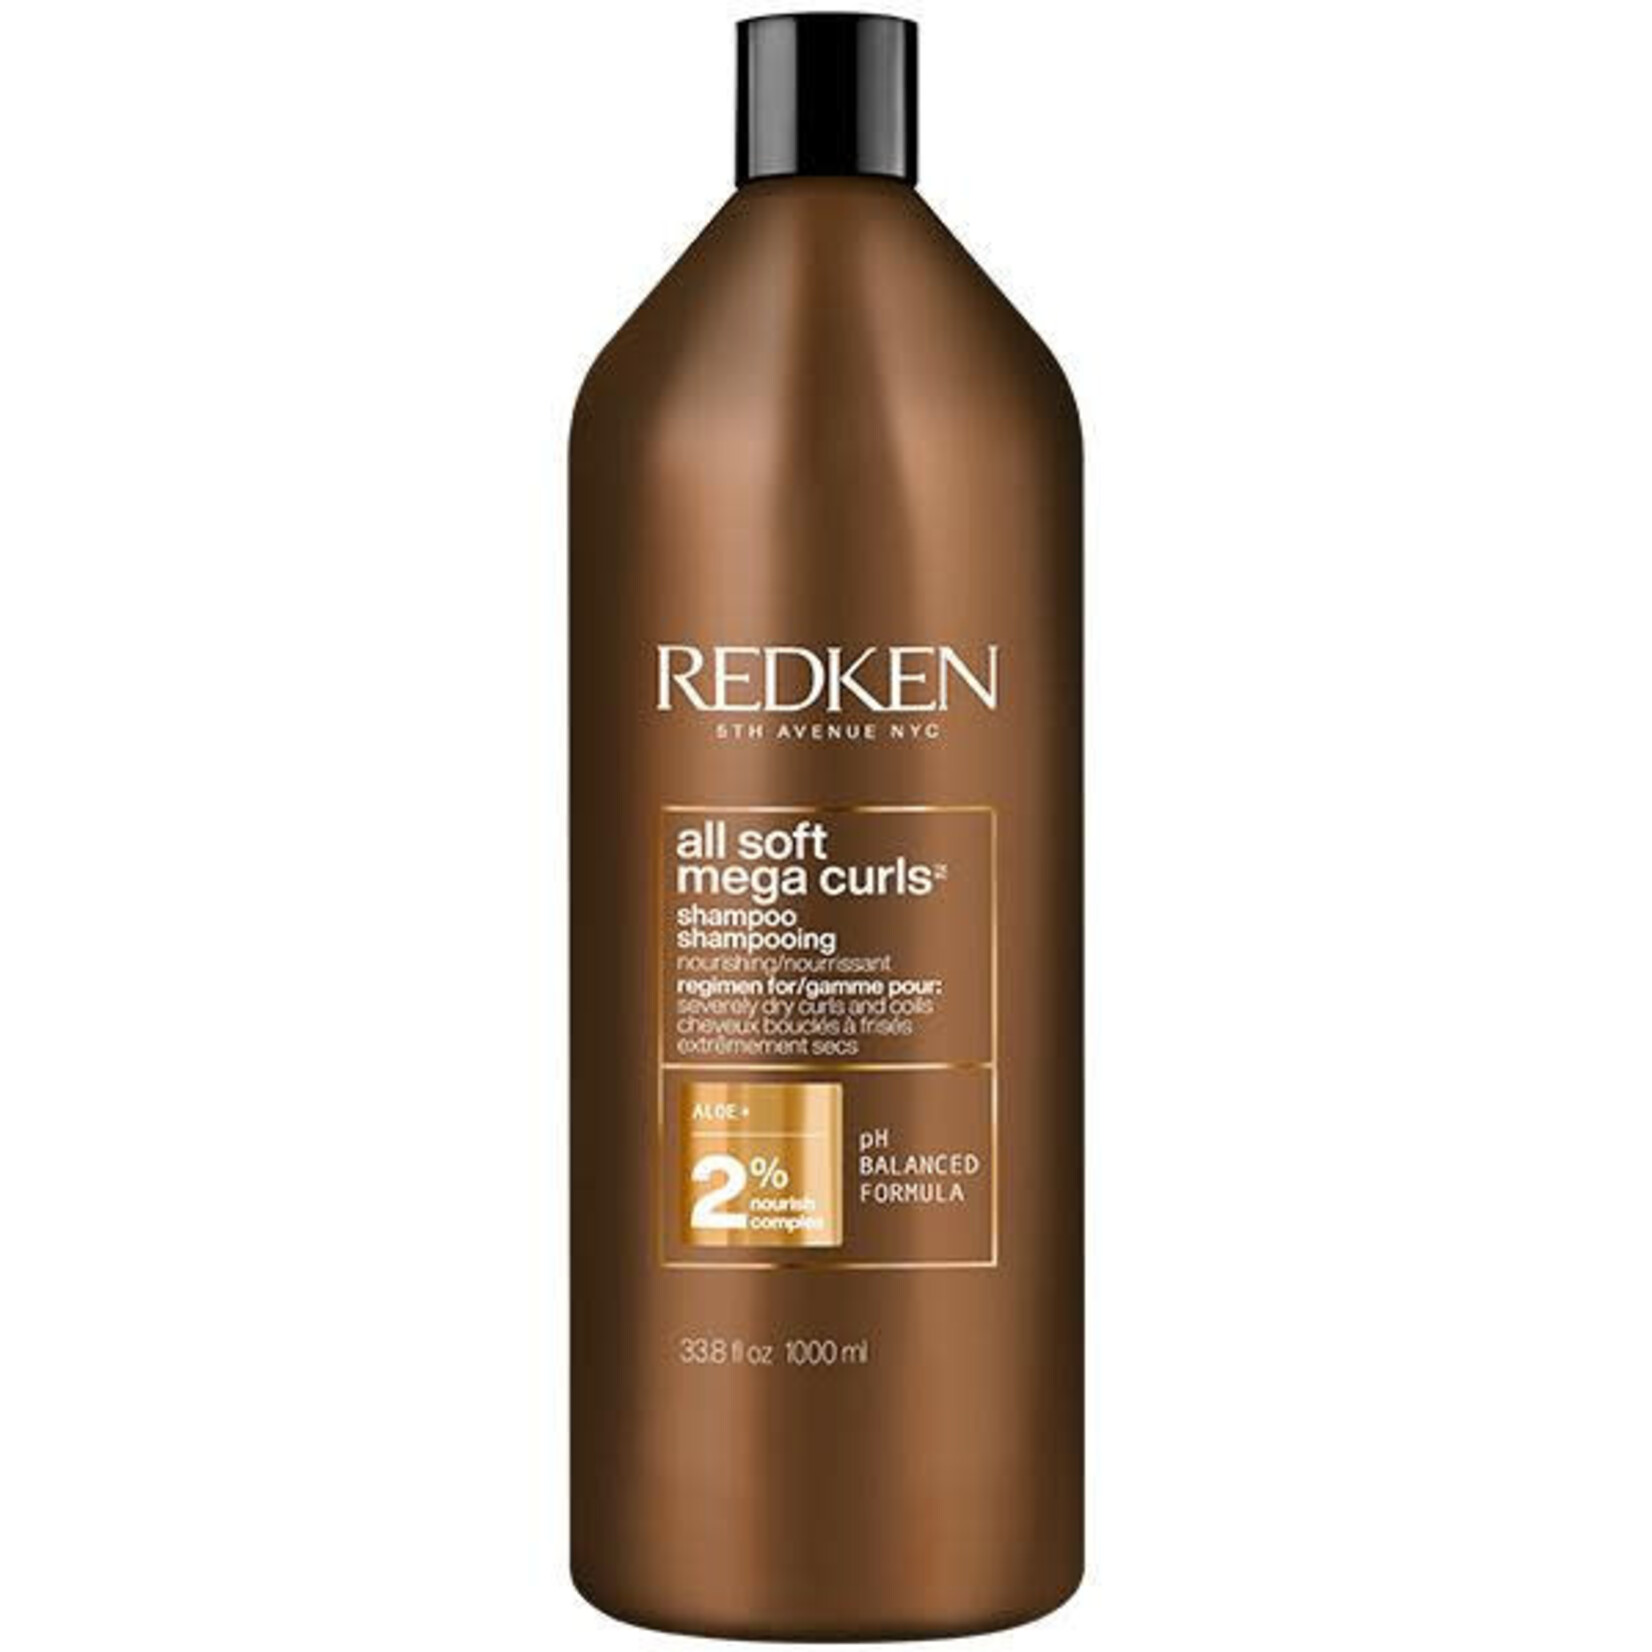 Redken Redken - All Soft - Mega curls shampooing 1L